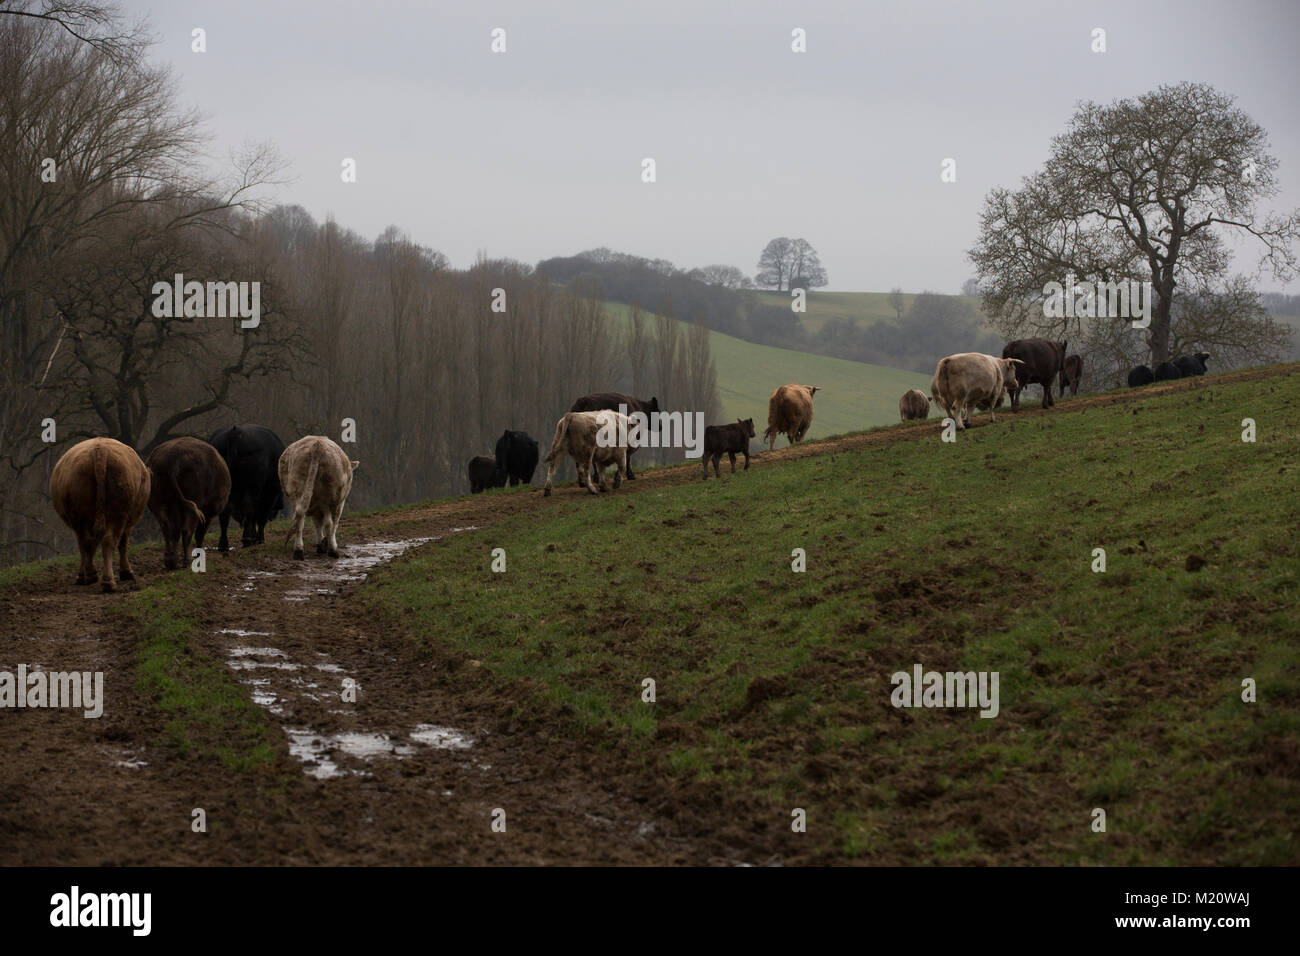 Rosamund Young, Autor von "Das geheime Leben der Kühe", fotografiert auf Drachen Nest Farm, wo Sie kostenfreie Rassen - Rinder, Cotswolds, England, Großbritannien Stockfoto